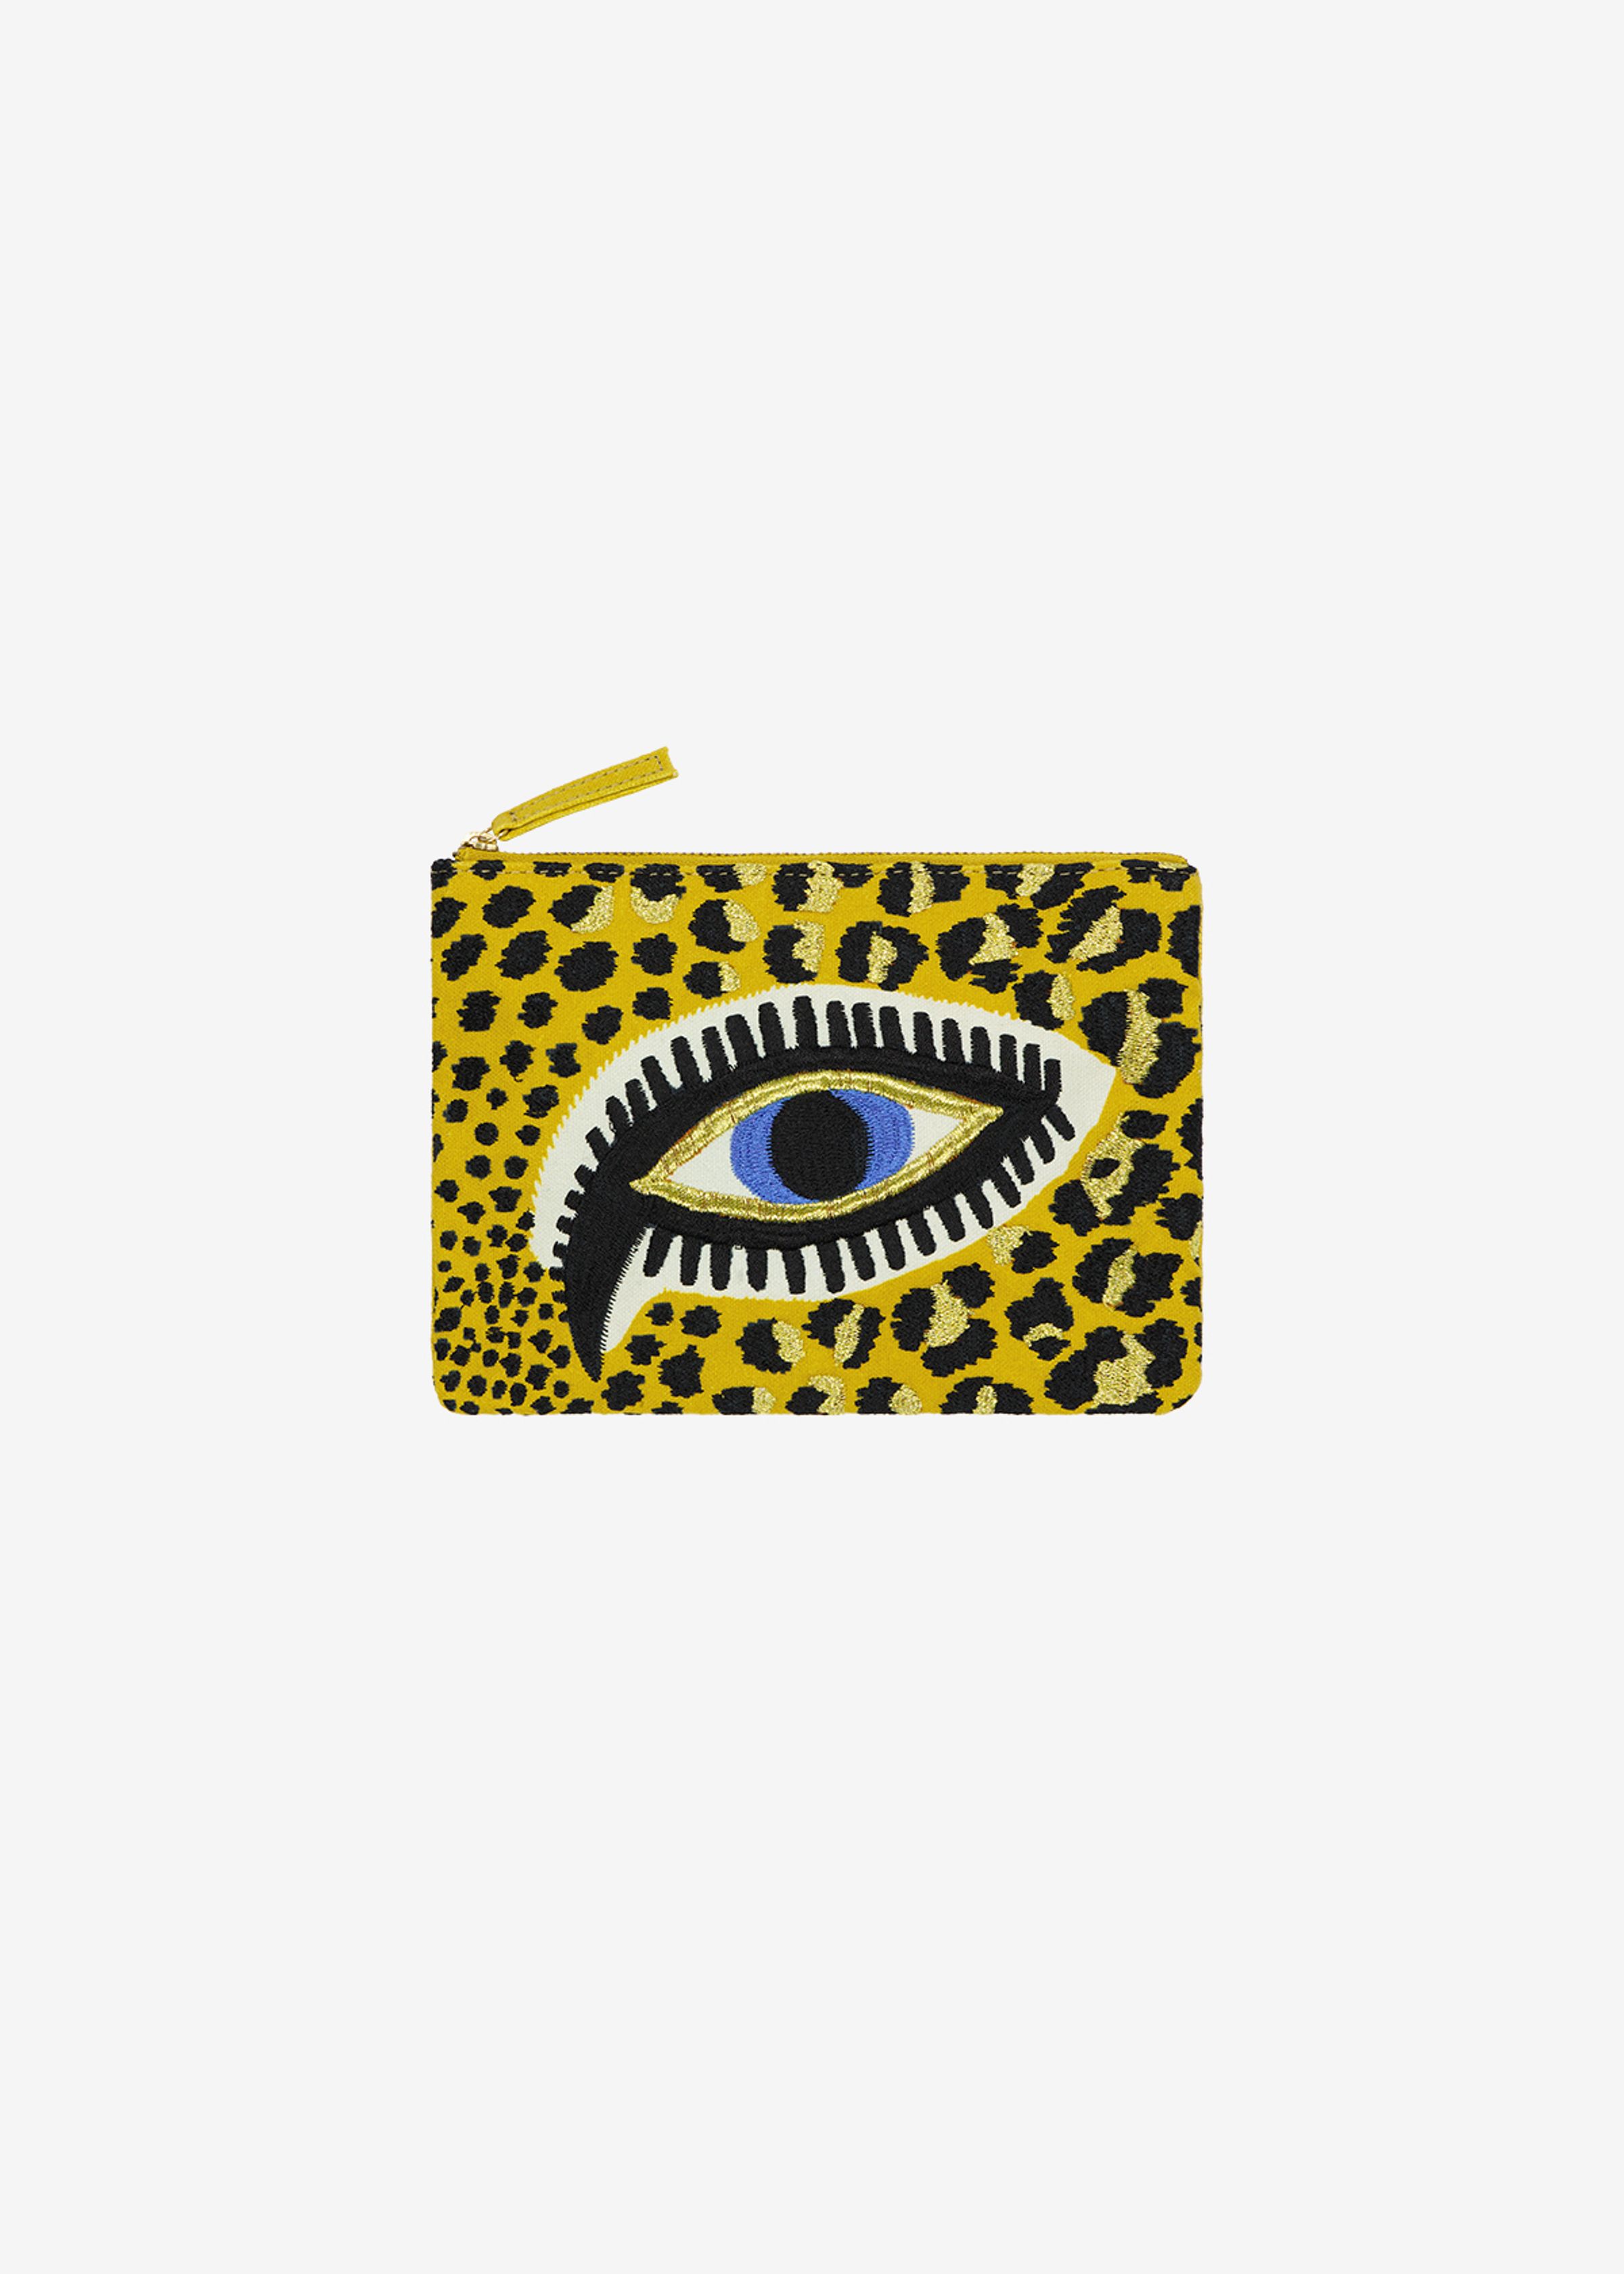 Pochette Brodée - Leopard Eyes - Jaune